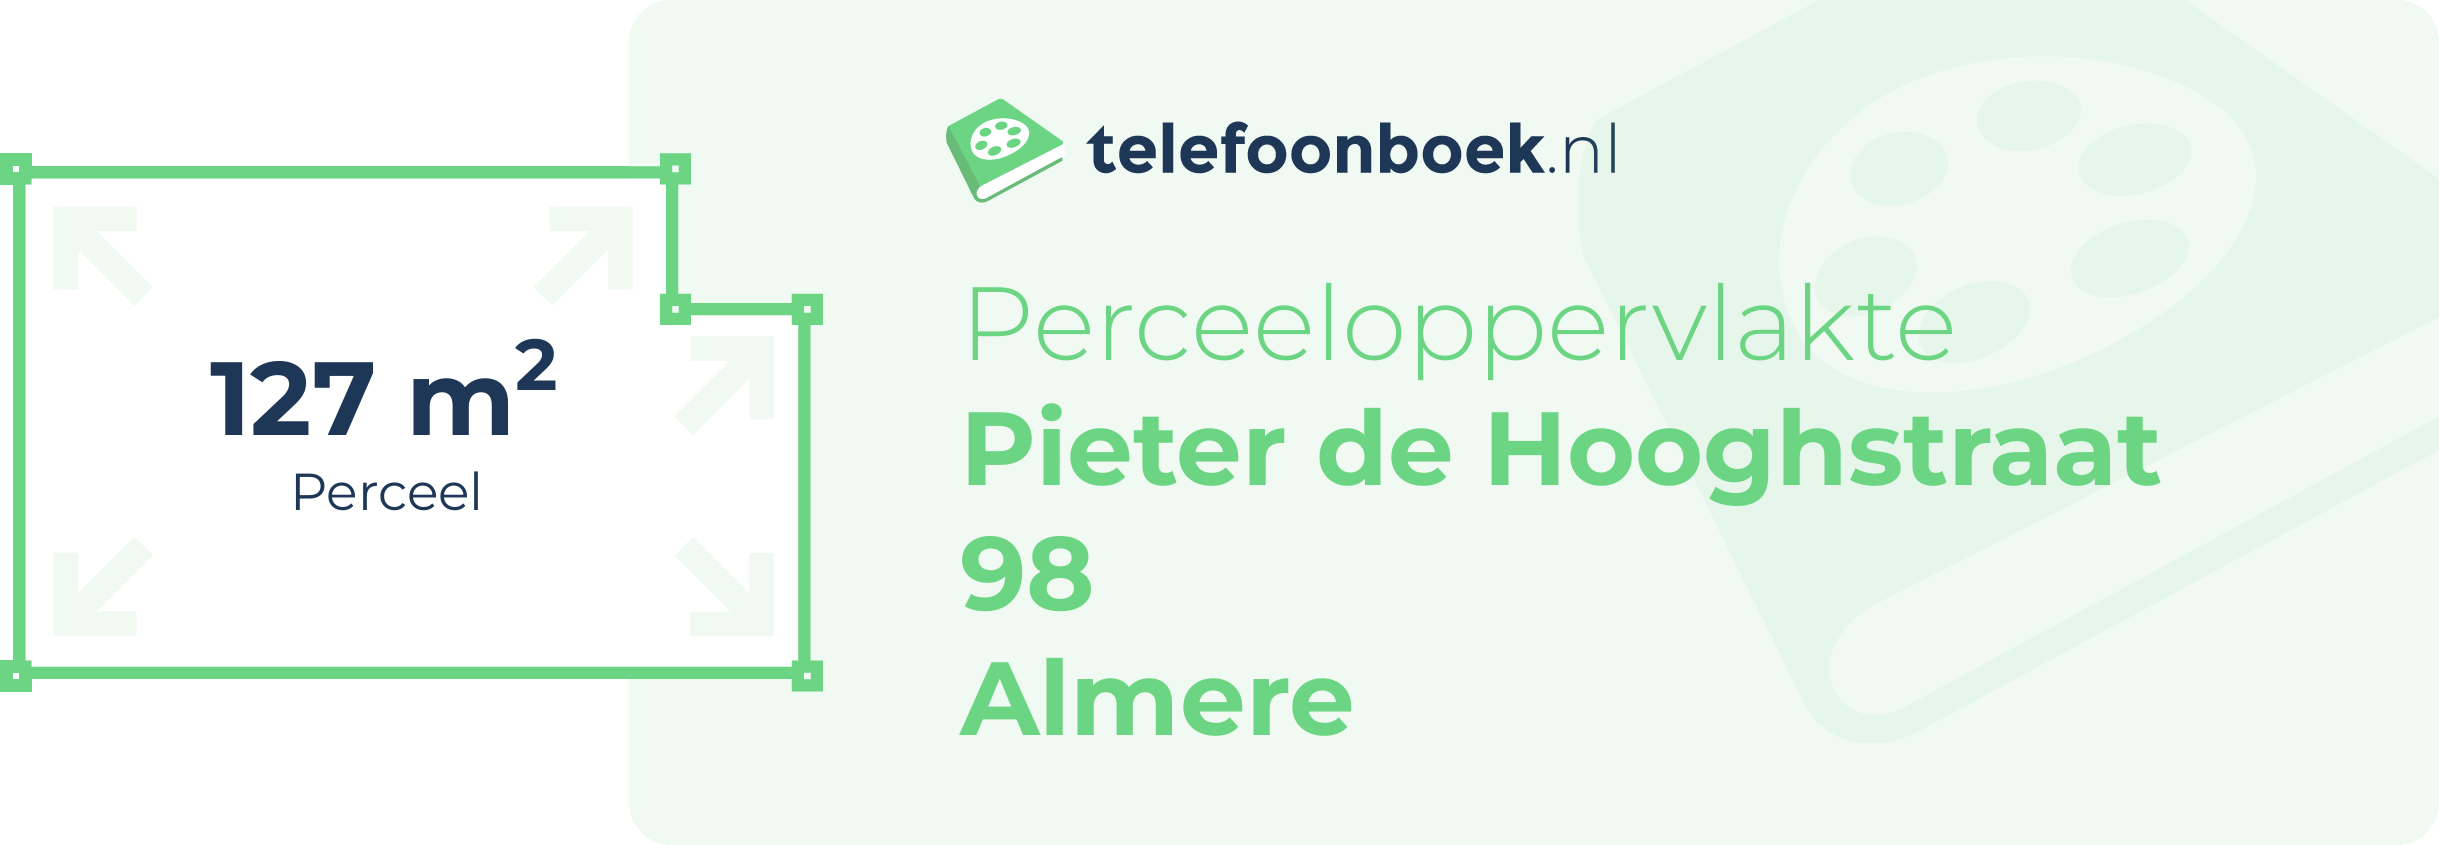 Perceeloppervlakte Pieter De Hooghstraat 98 Almere